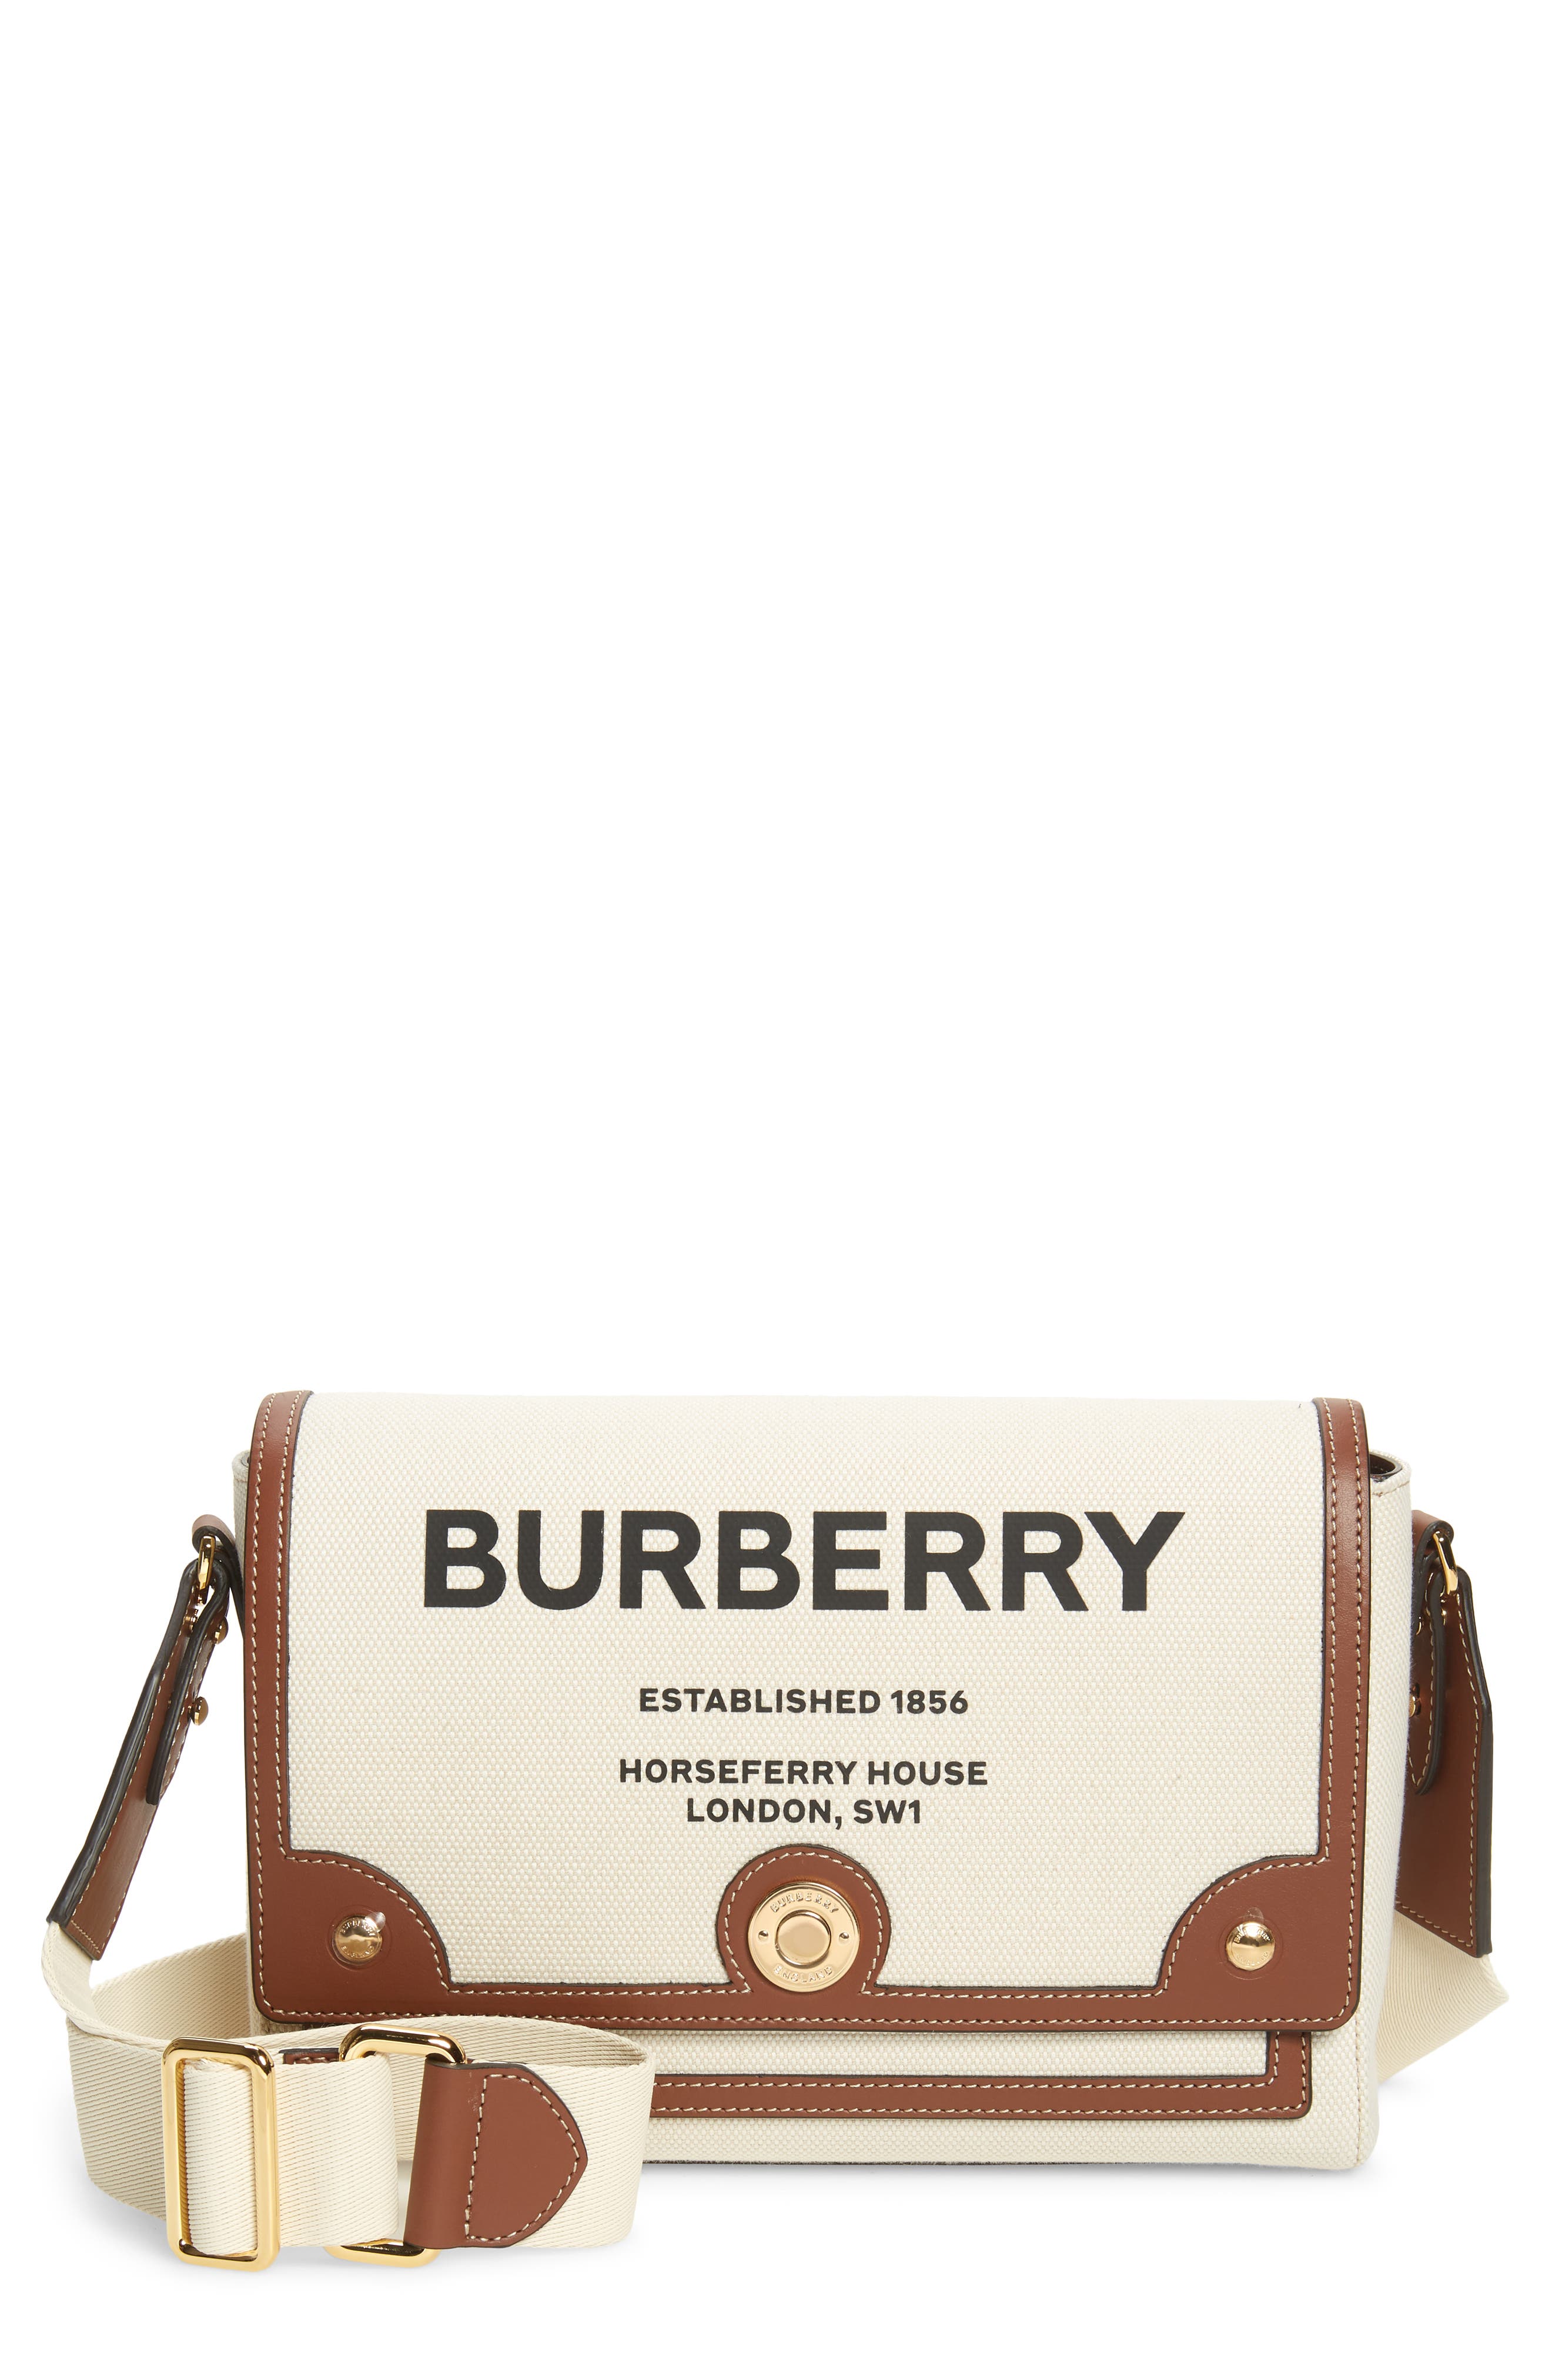 Burberry Horseferry Bag Online, 51% OFF | www.vetyvet.com